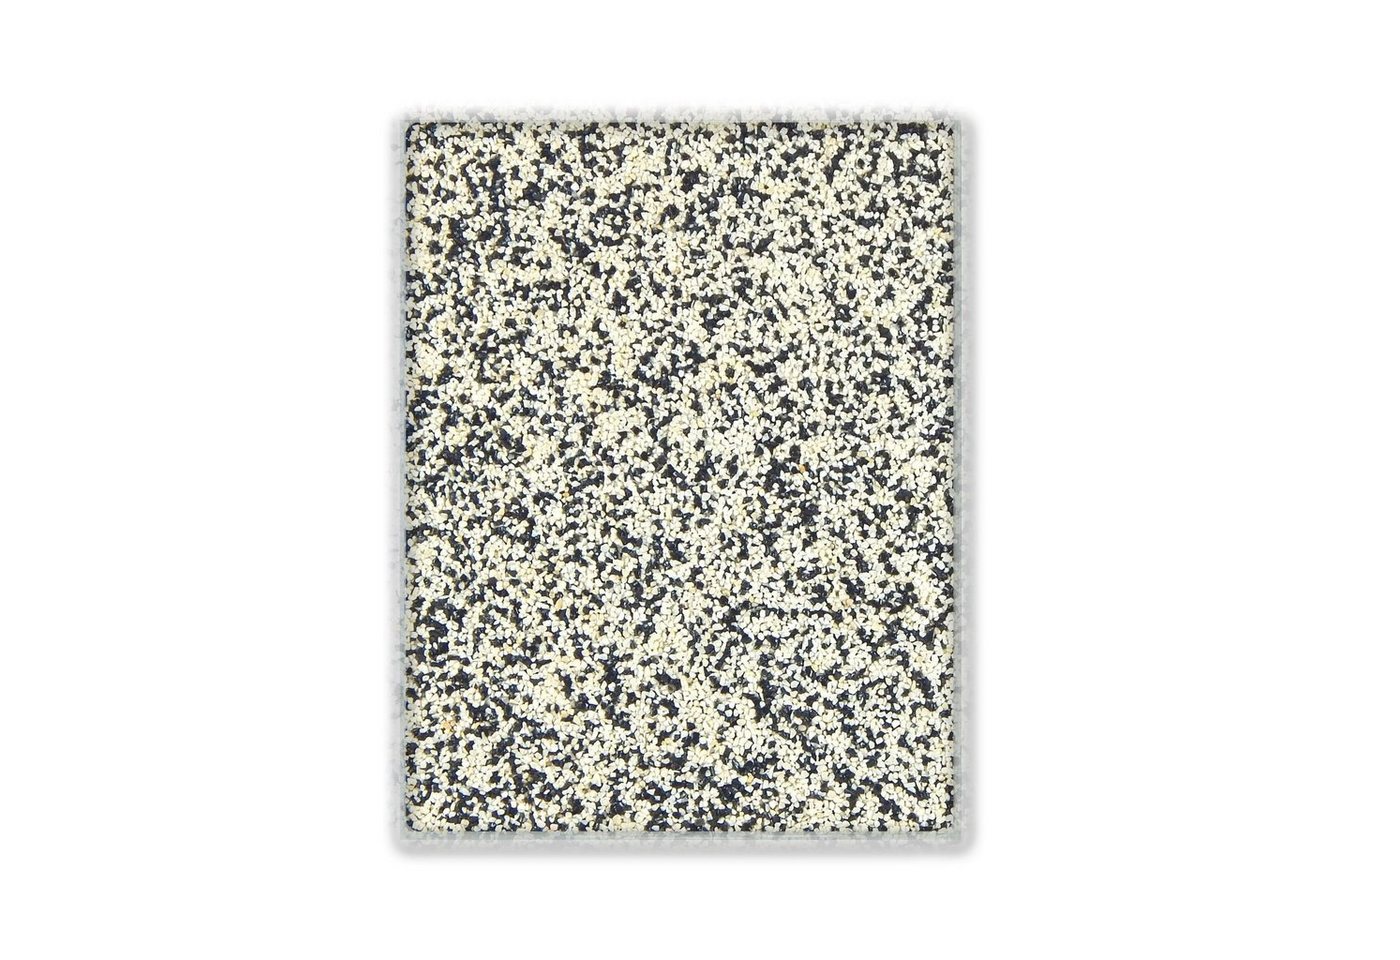 Terralith® Designboden Farbmuster Kompaktboden -mix napoli-, Originalware aus der Charge, die wir in diesem Moment im Abverkauf haben. von Terralith®